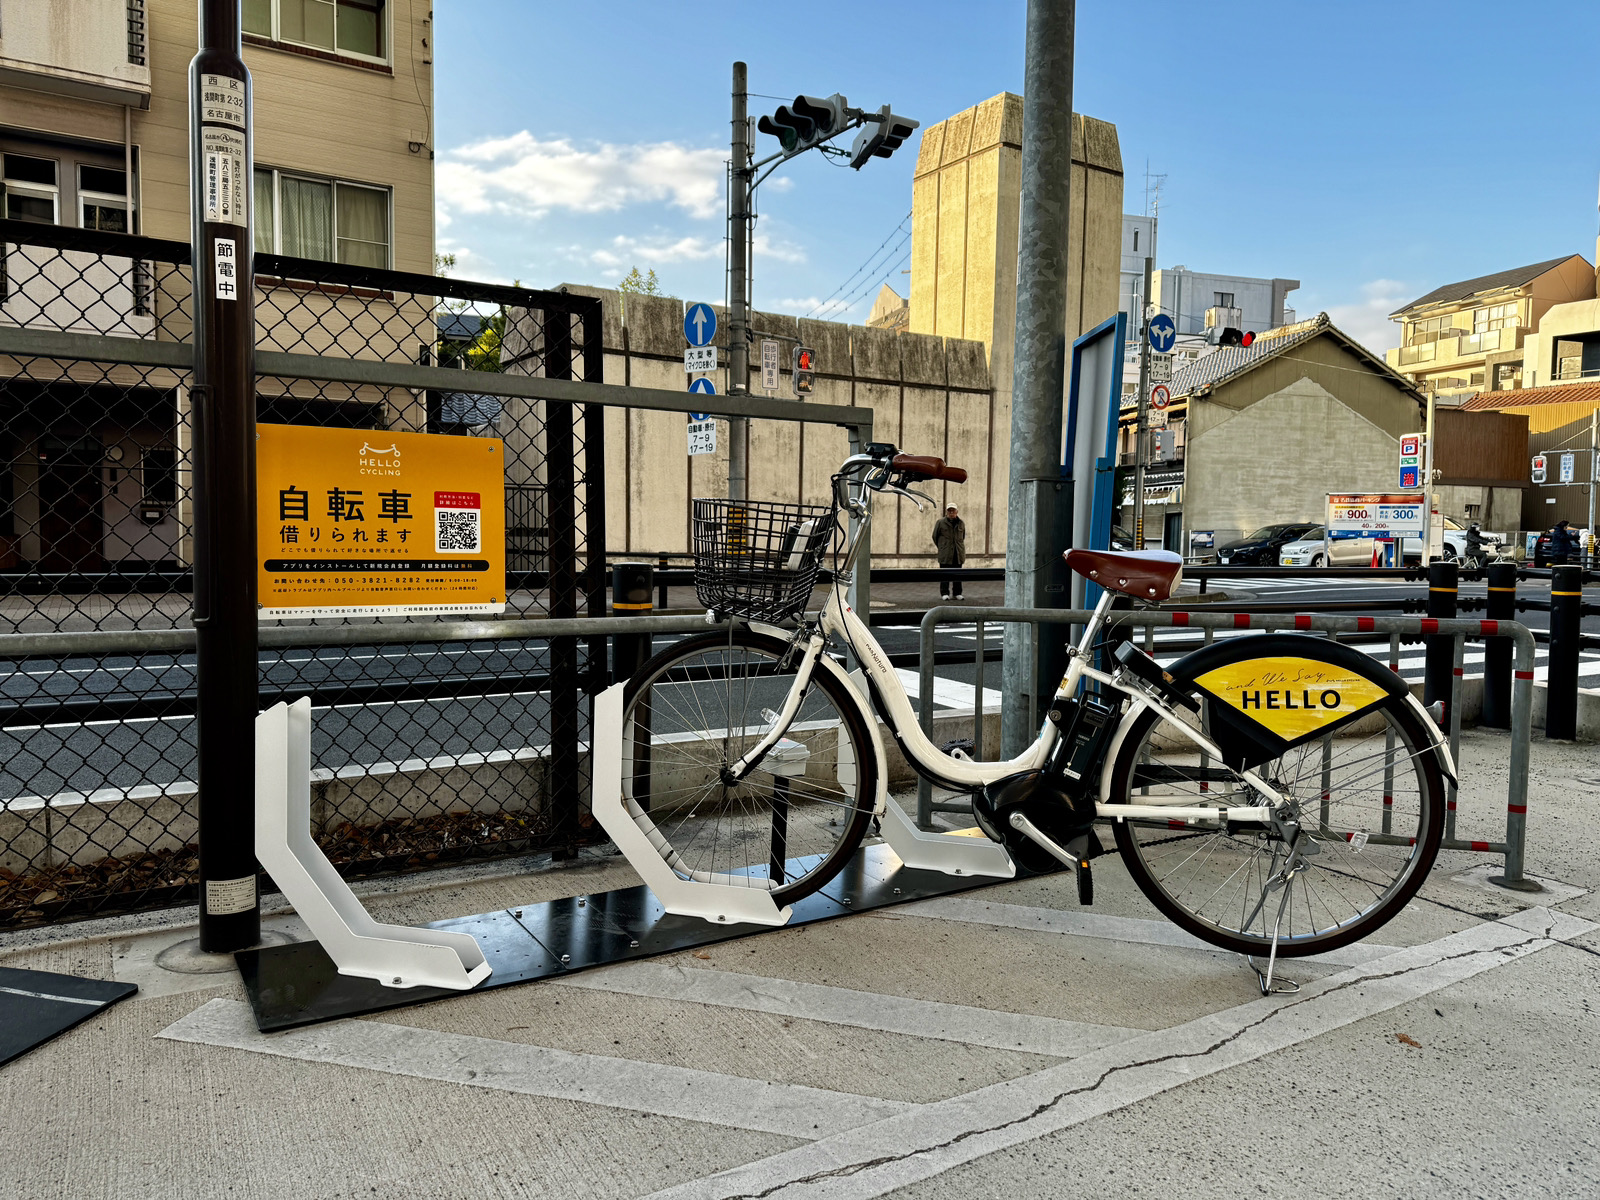 浅間町北自転車駐車場 (HELLO CYCLING ポート)の画像1